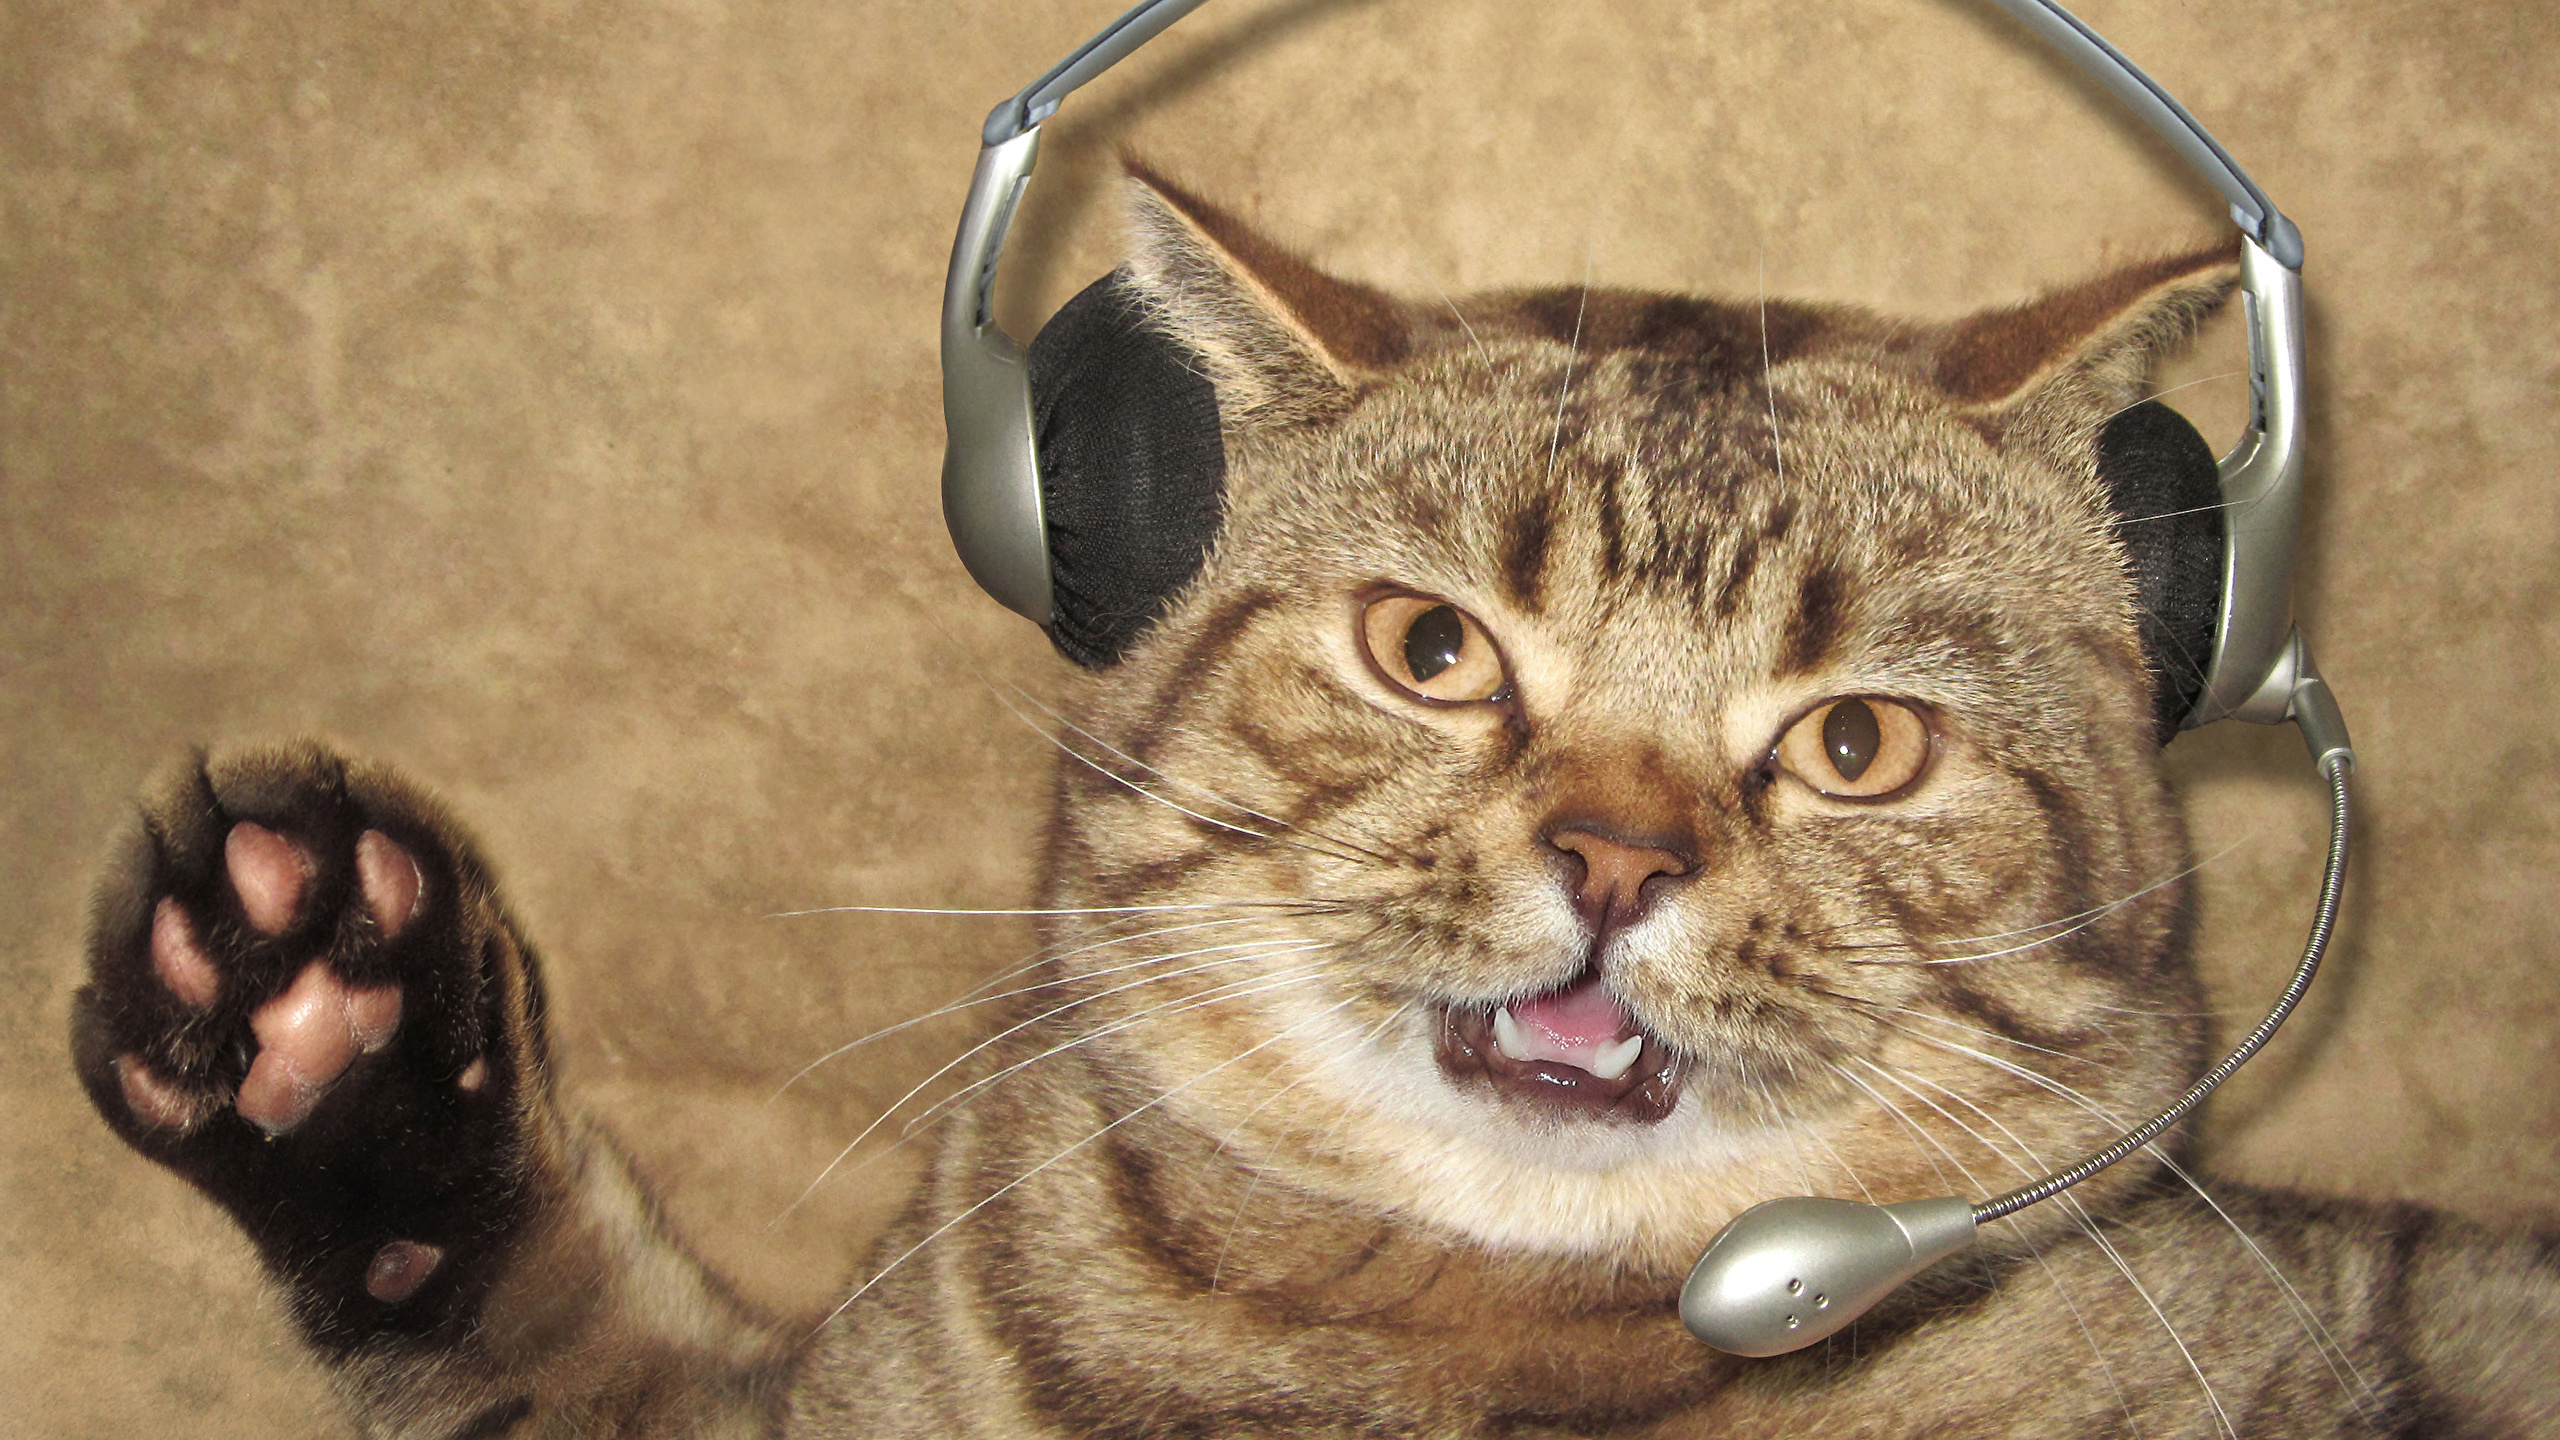 壁紙 2560x1440 クリエイティブ 飼い猫 おもしろい ヘッドフォン マイクロフォン 動物 ダウンロード 写真